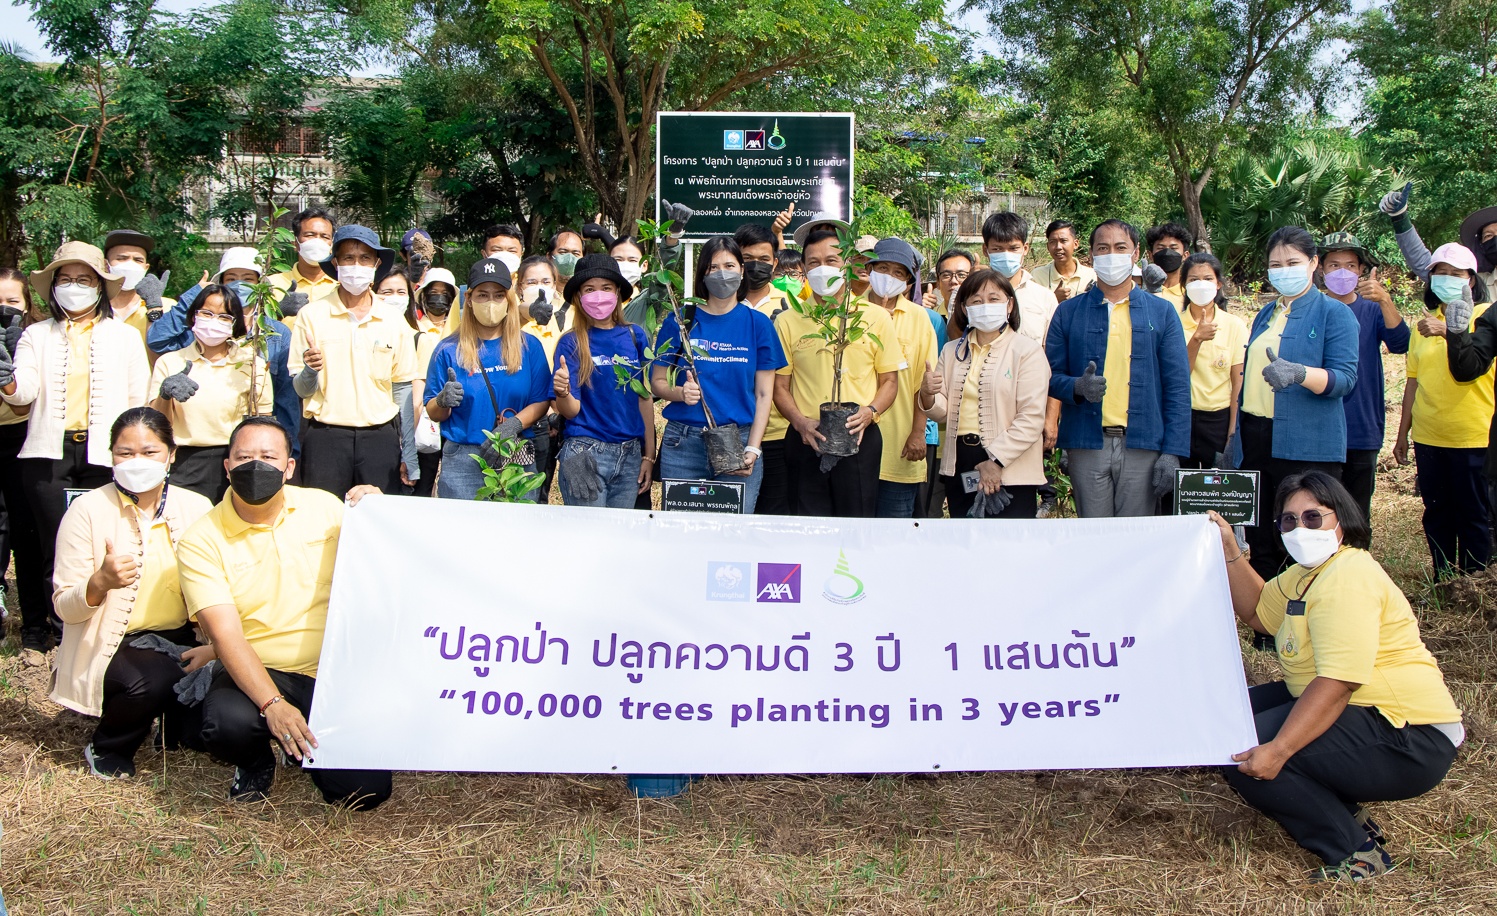 กรุงไทย–แอกซ่า ประกันชีวิต บรรลุเป้าหมายใหญ่ ปลูกต้นไม้ครบ 100,000 ต้น ตอกย้ำผู้นำ Green Insurer สร้างพื้นที่สีเขียวทั่วประเทศไทย